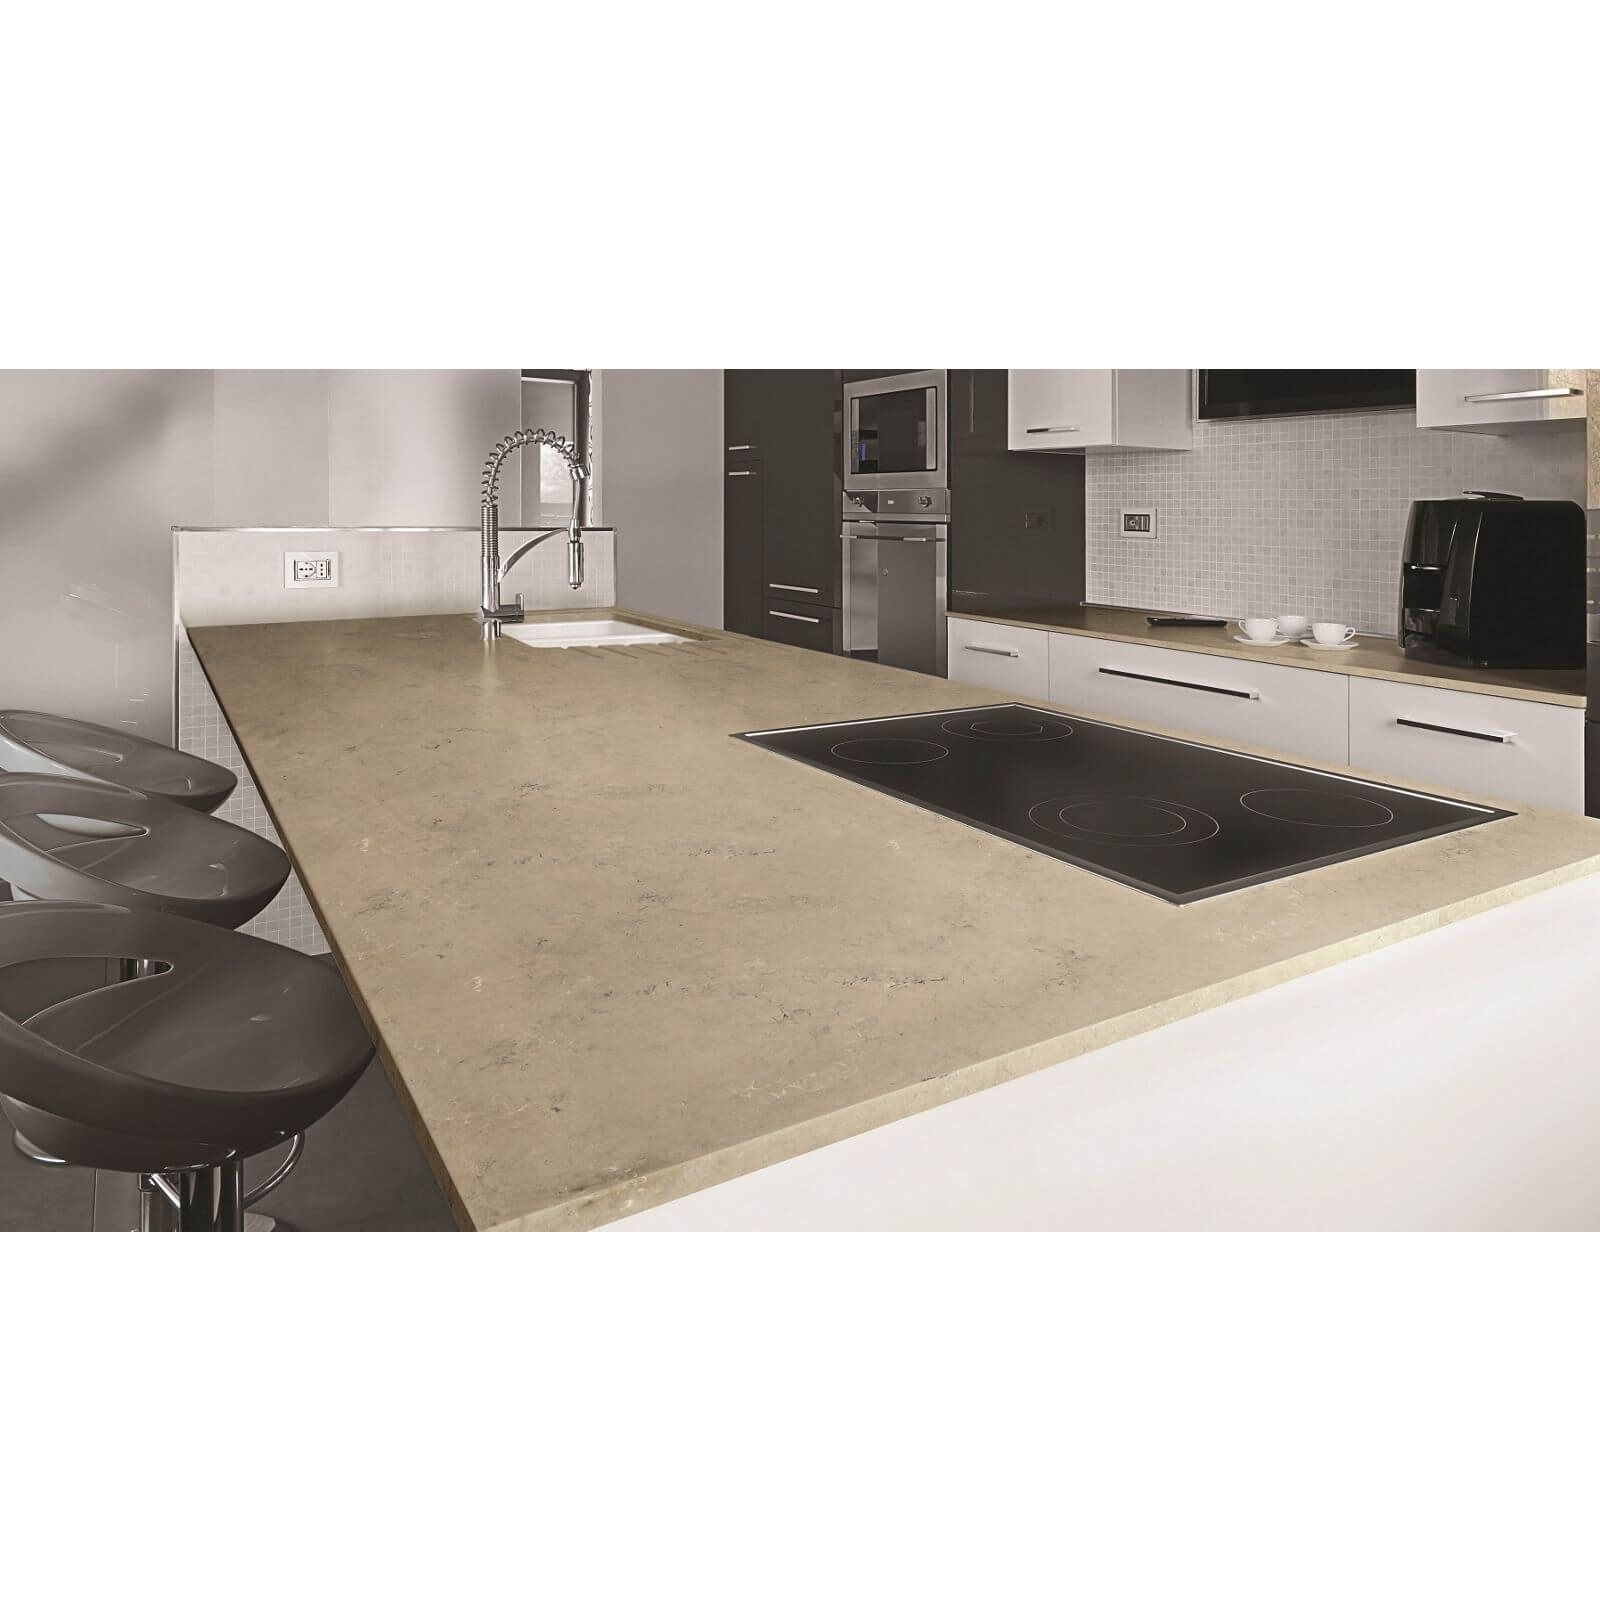 Minerva Desert Rock Kitchen Worktop - 305 x 65 x 2.5cm